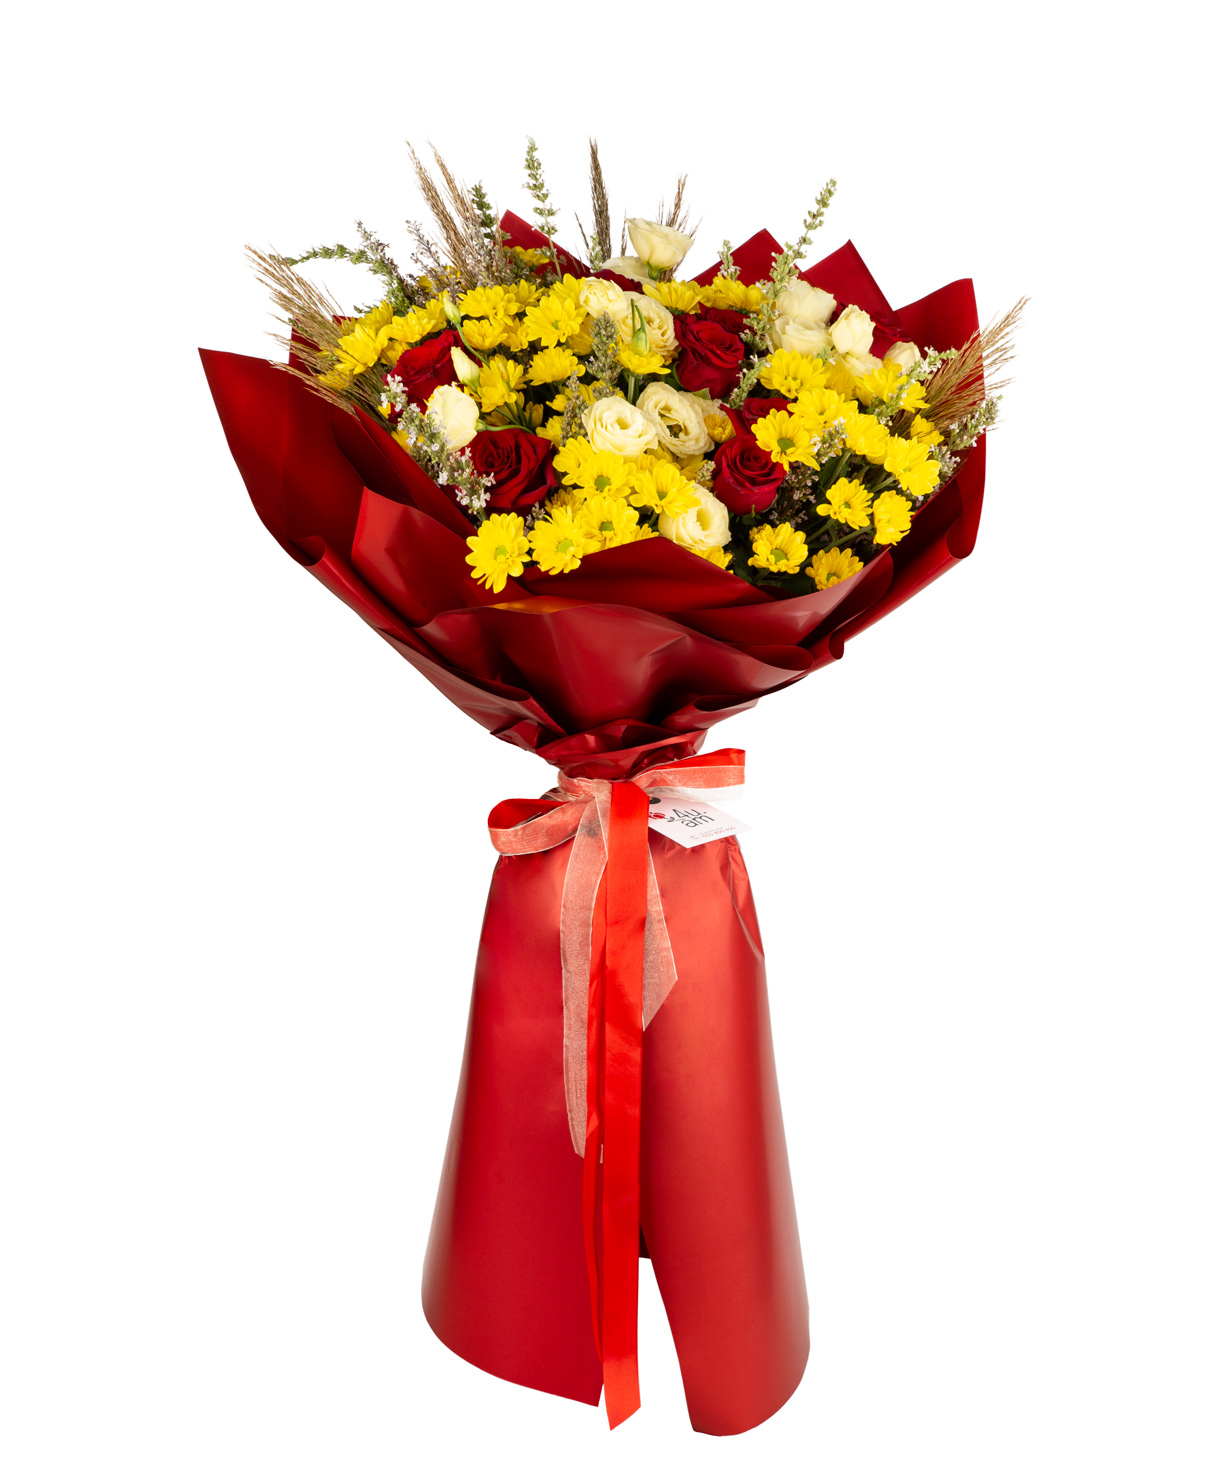 Ծաղկեփունջ «Red Alba»  վարդերով, քրիզանթեմներով և լիզիանտուսներով